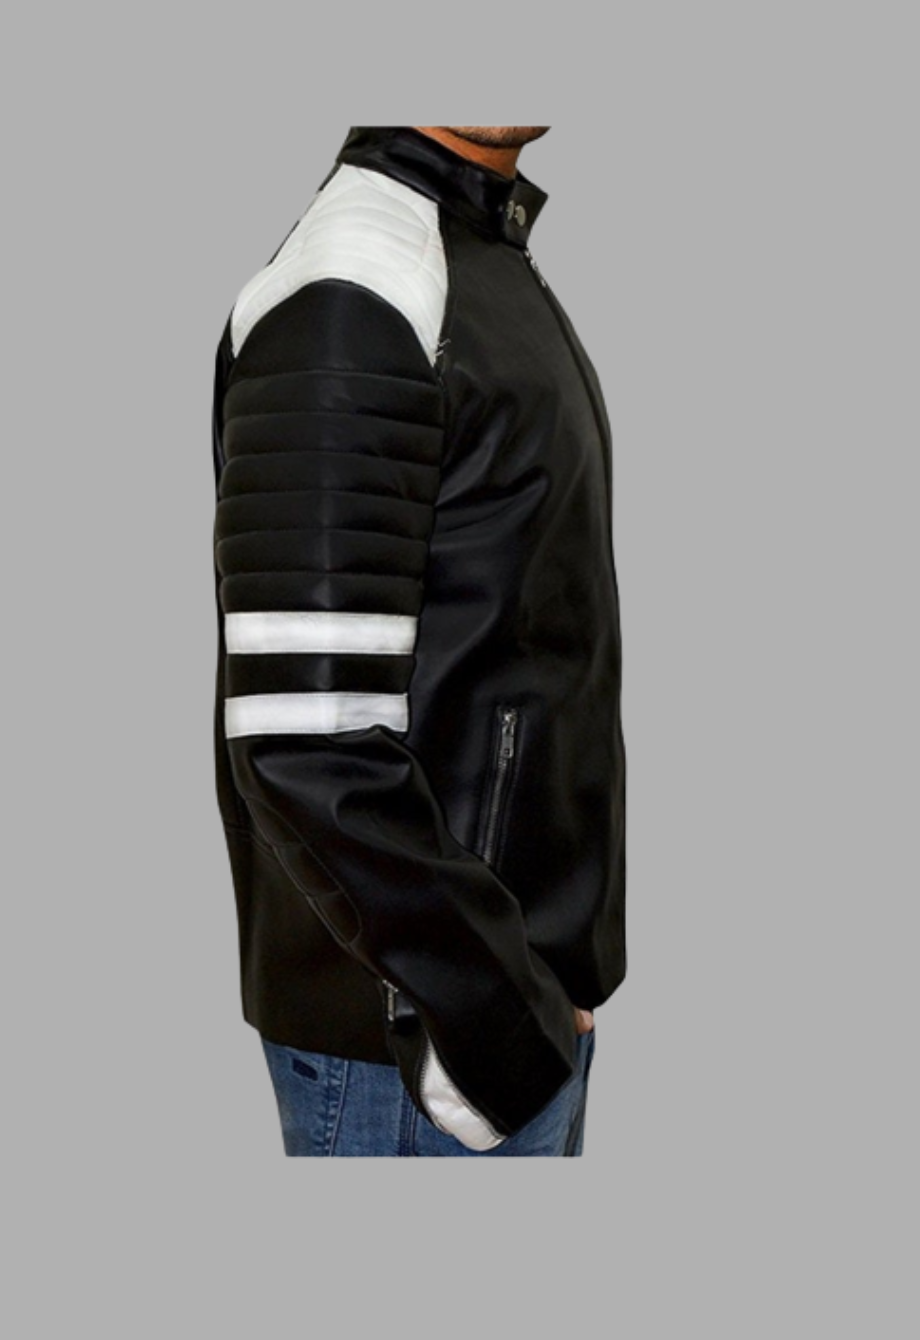 Tyler Durden Mayhem Leather Jacket